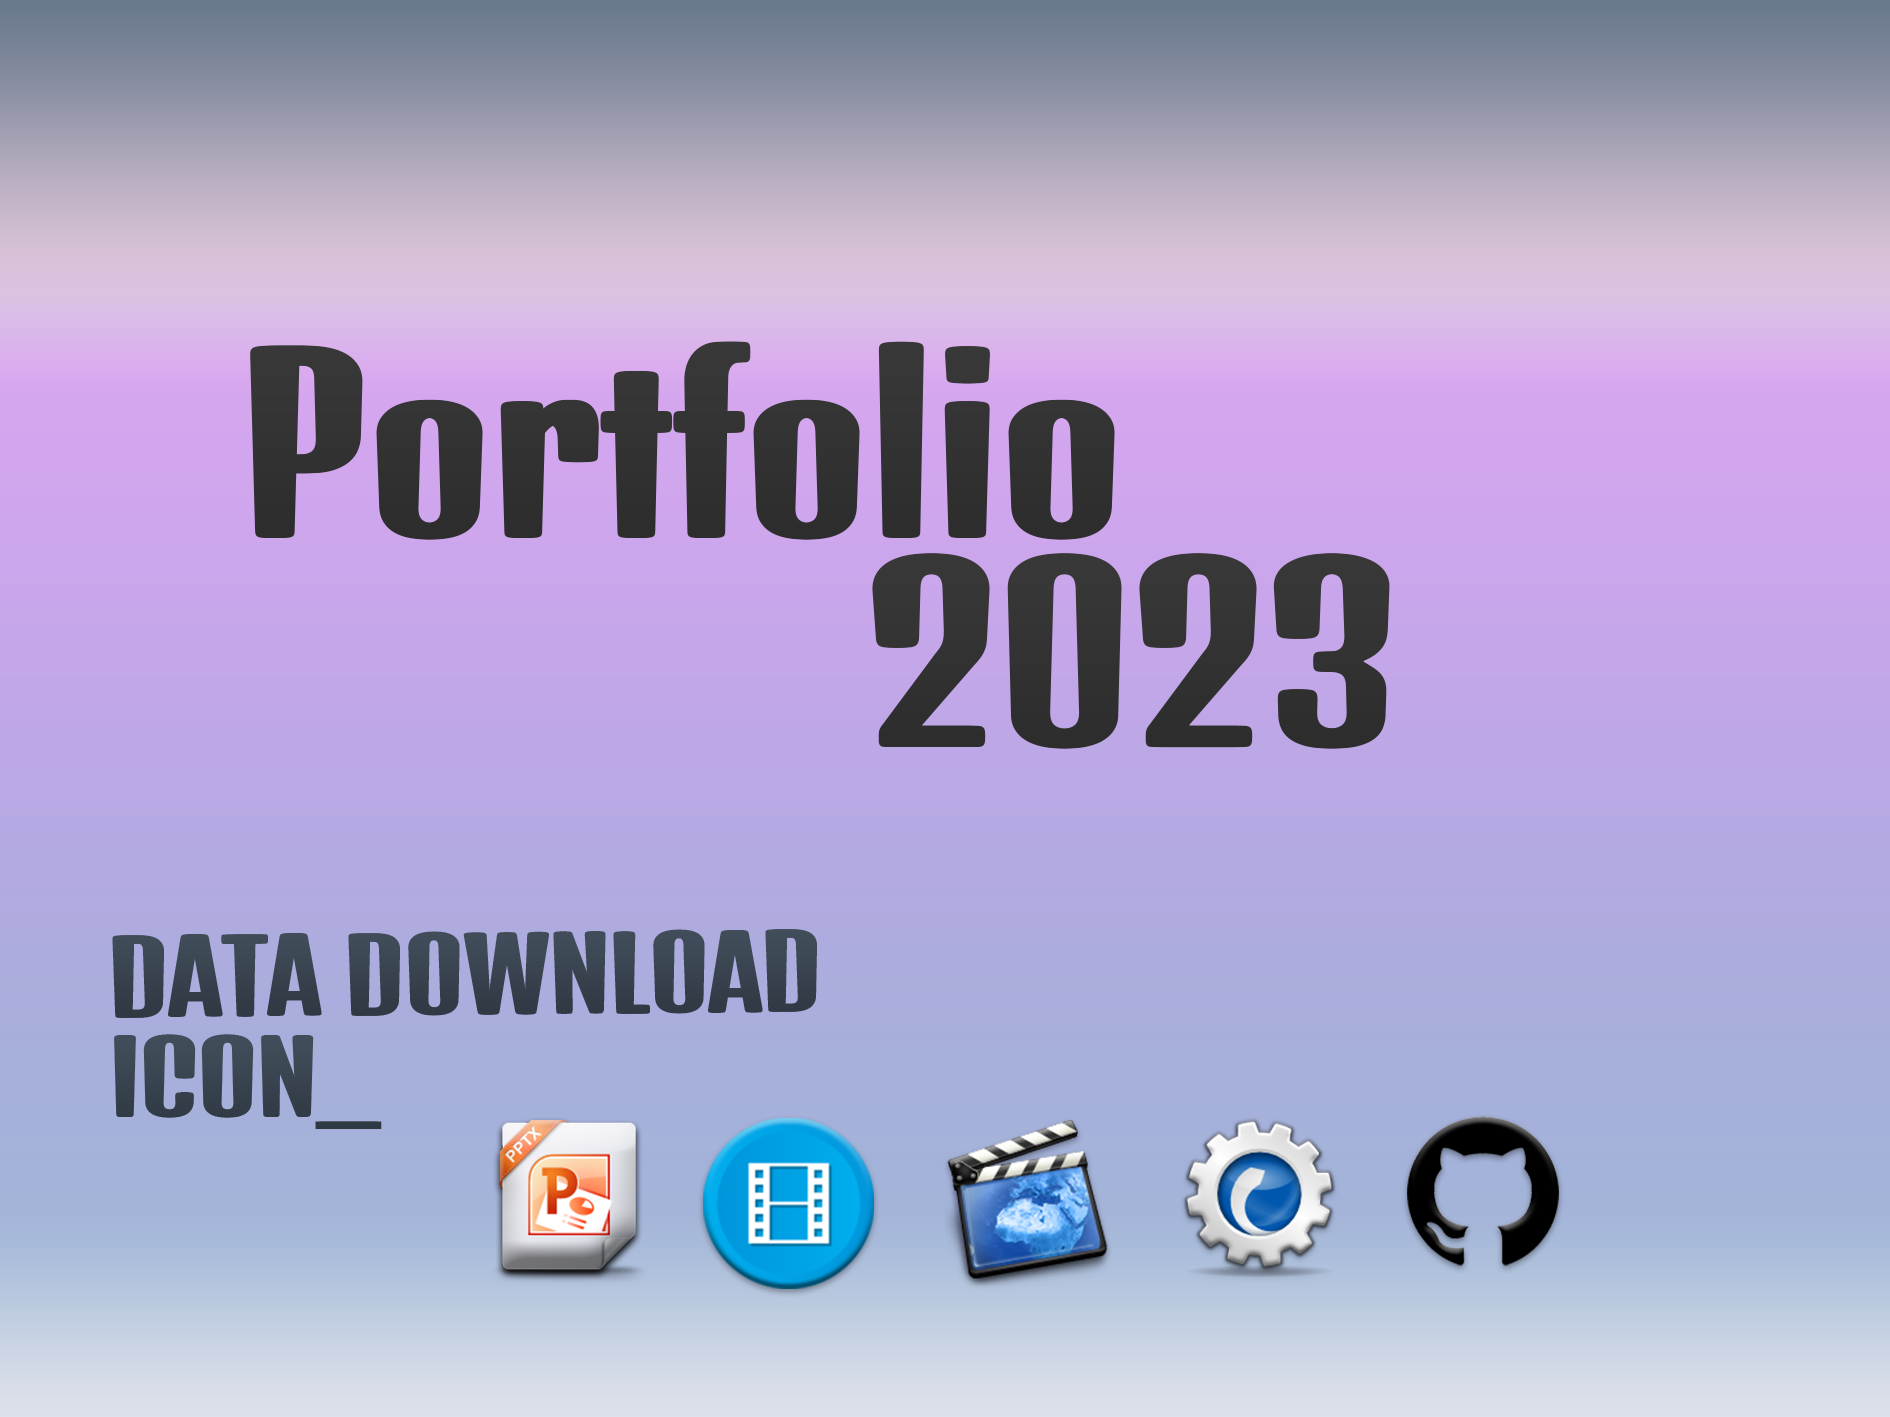 Portpolio 2023 자료 다운로드 용 아이콘